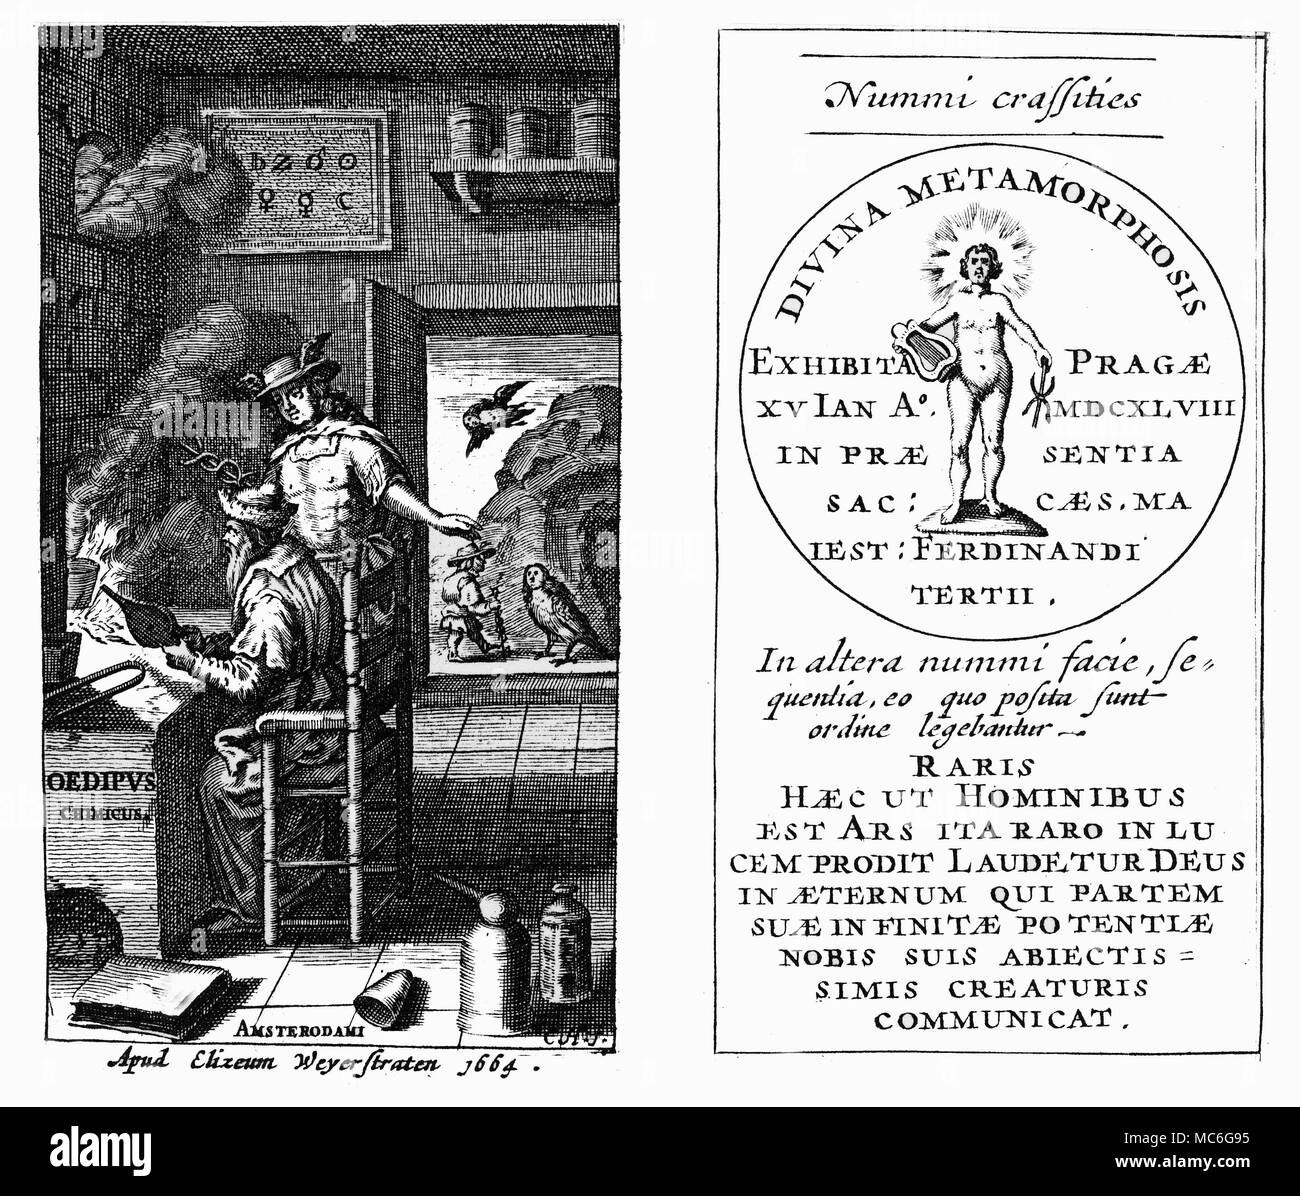 Alchemie - Gold - ödipus - Sphinx. [Links] Titlepage von Johann Joachim Becher, Ödipus Chimicus, 1664. Die Grafik spielt mit dem Titel kann im Detail durch die offene Tür gesehen werden: Ödipus, mit dem Personal oder caduceus von Quecksilber, ist durch das menschliche konfrontiert - vorangegangen Sphinx. In der fortlaufenden Erzählung, über die Sphinx von der Klippe stürzt, denn Ödipus in der Lage war, zu Ihrer Frage (über die Natur des Menschen) beantworten. Die mythologische Anspielung ist natürlich, Becher und Quecksilber im Vordergrund: Der Alchemist arbeitet mit Quecksilber die Rätsel des Universums zu beantworten. [Rechts] Stockfoto